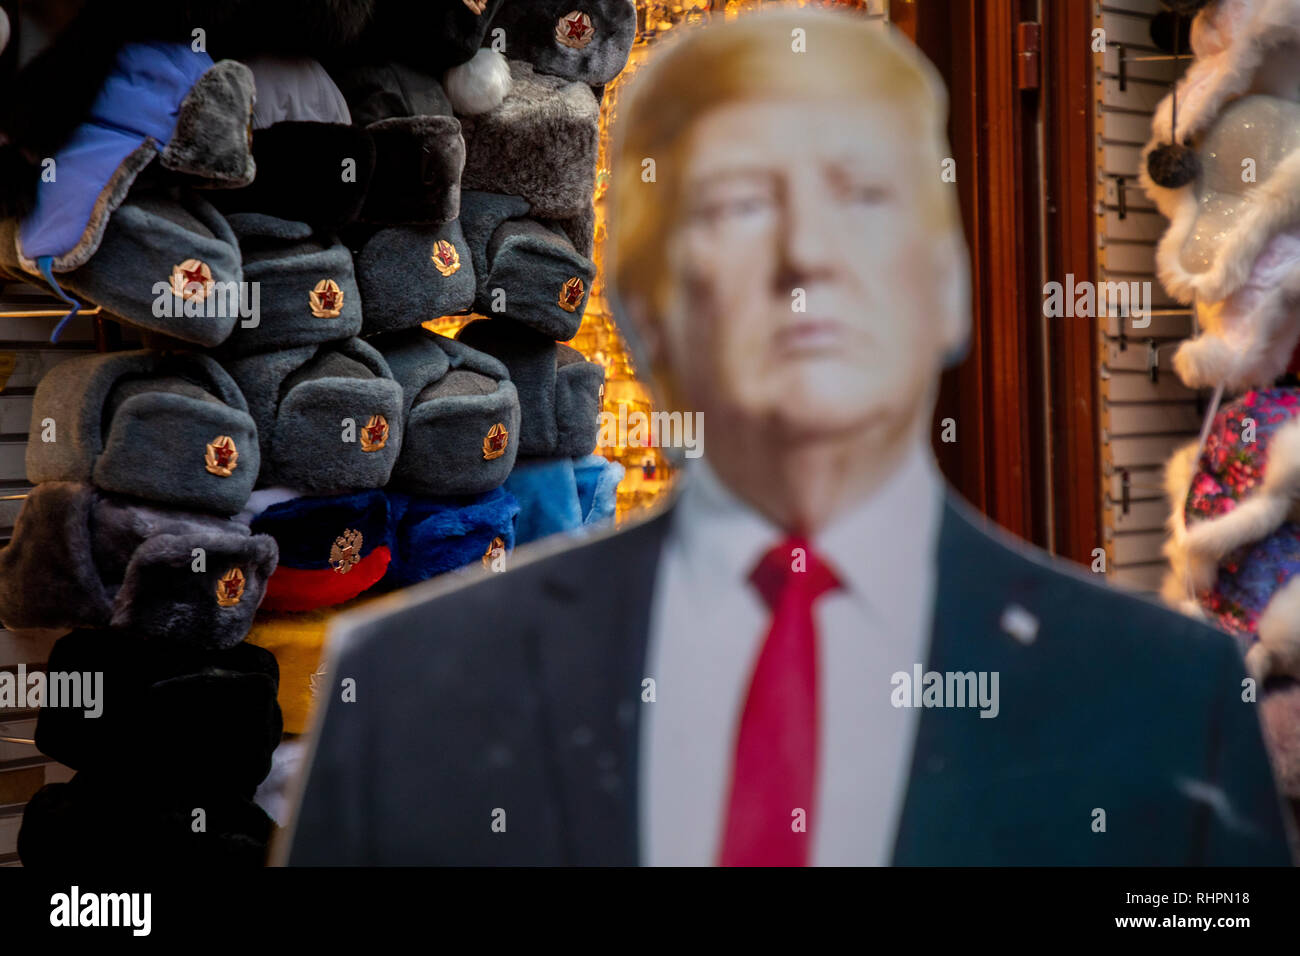 Die in voller Länge Porträt von Donald Trump ist in der Nähe der Eingang ein Souvenir shop in der Arbat Straße im Zentrum von Moskau, Russland installiert Stockfoto